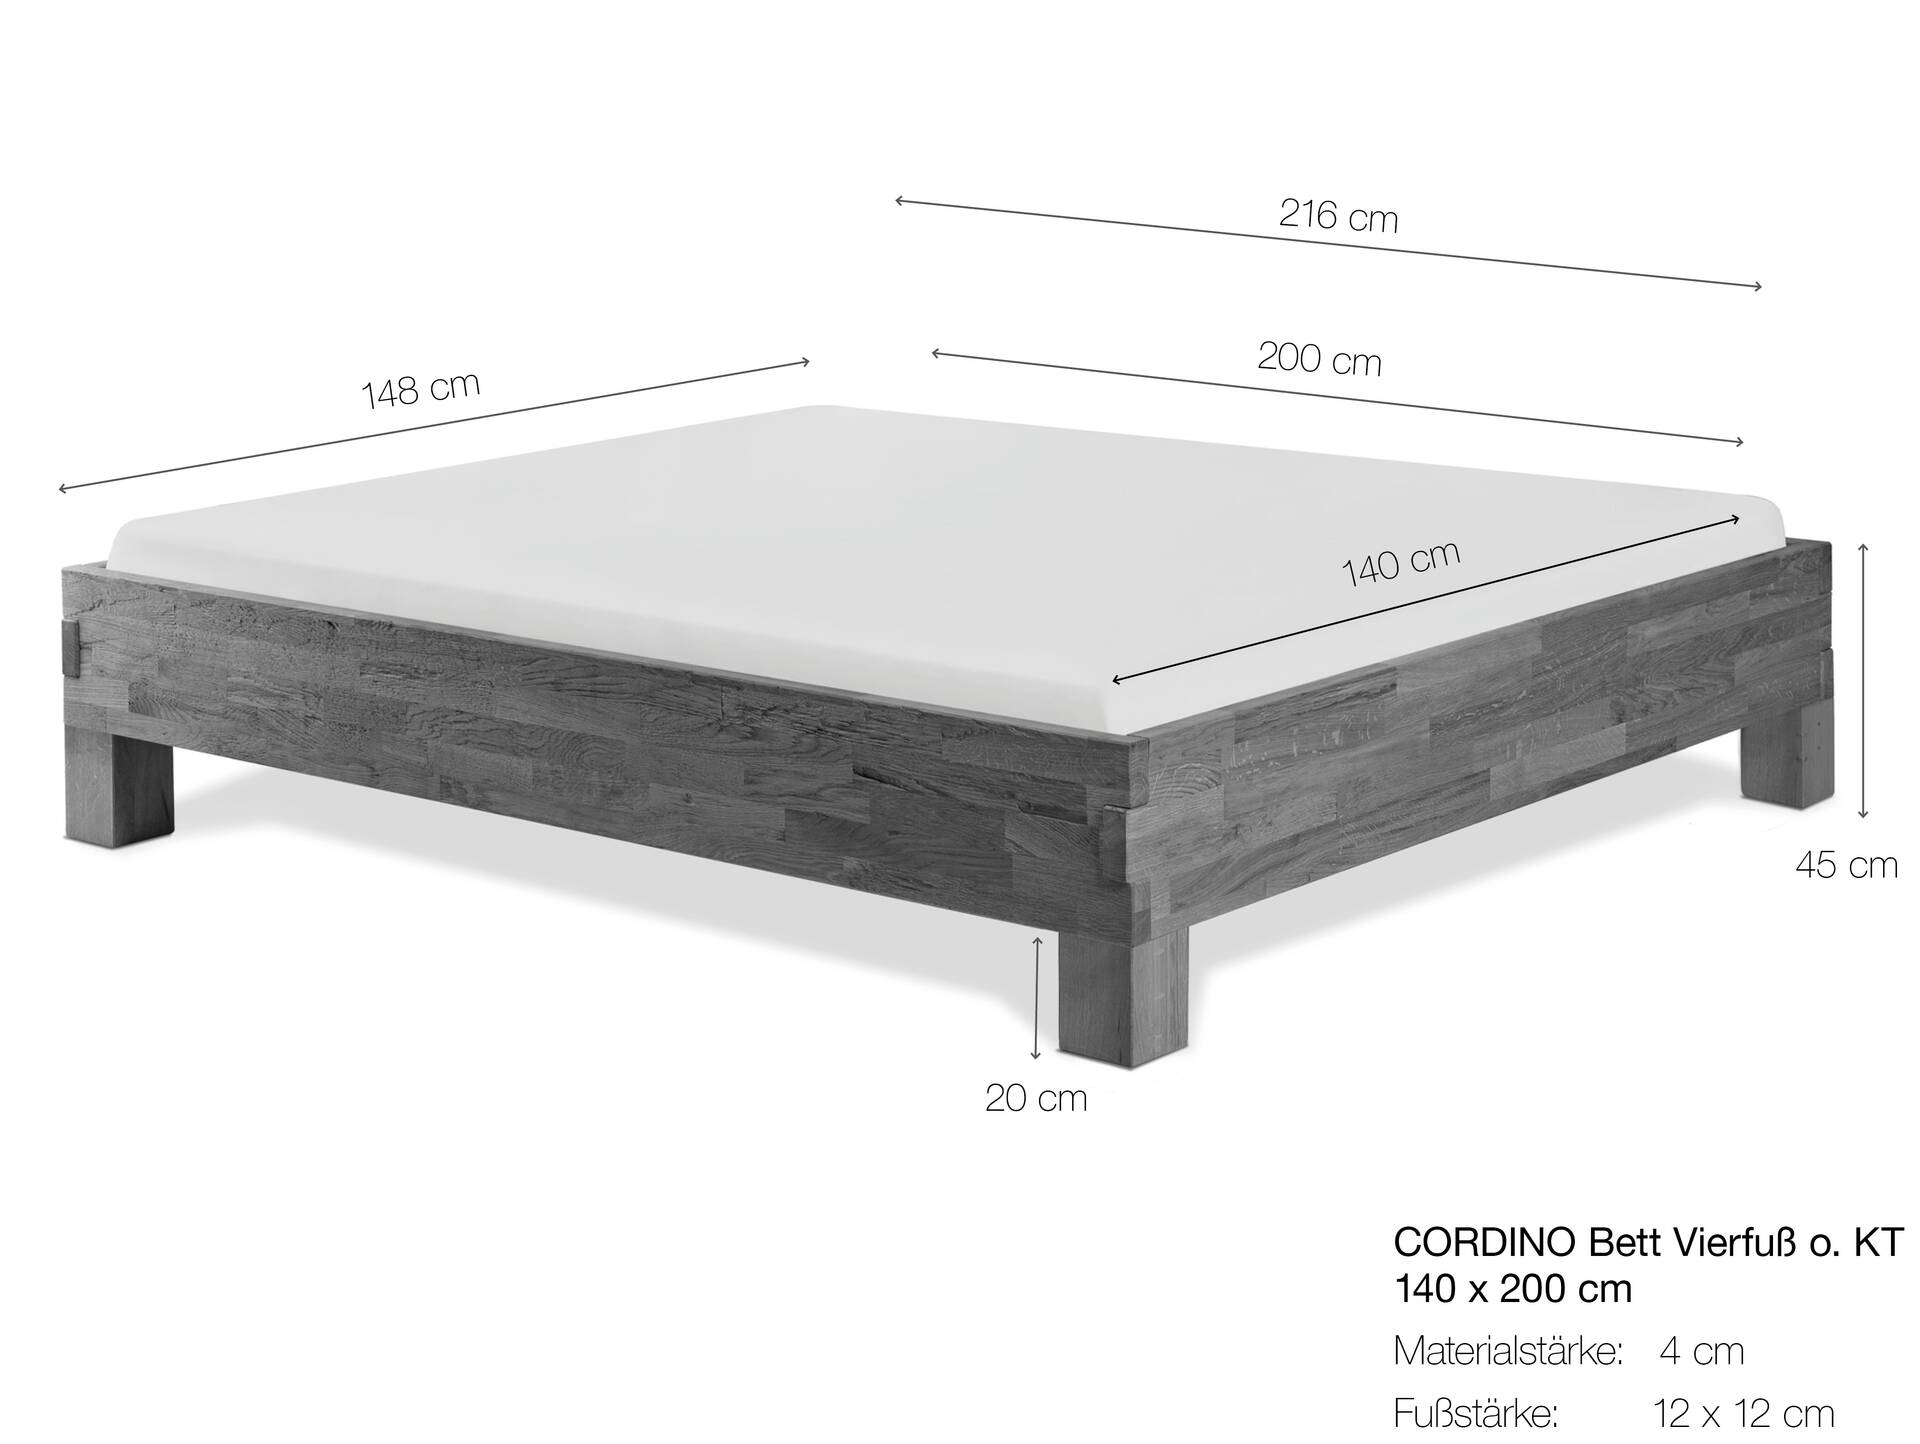 CORDINO 4-Fuß-Bett aus Eiche ohne Kopfteil, Material Massivholz 140 x 200 cm | Eiche lackiert | gebürstet